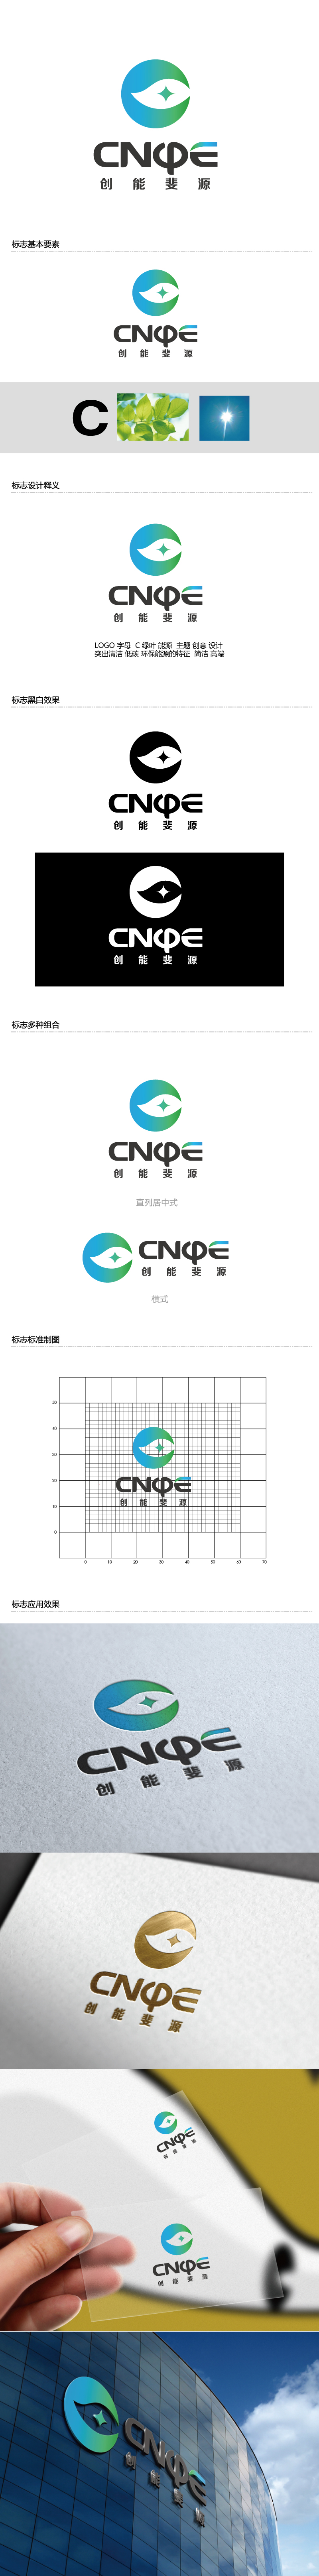 张俊的中文：创能斐源；英文：cnφe energy或者cnphie energylogo设计